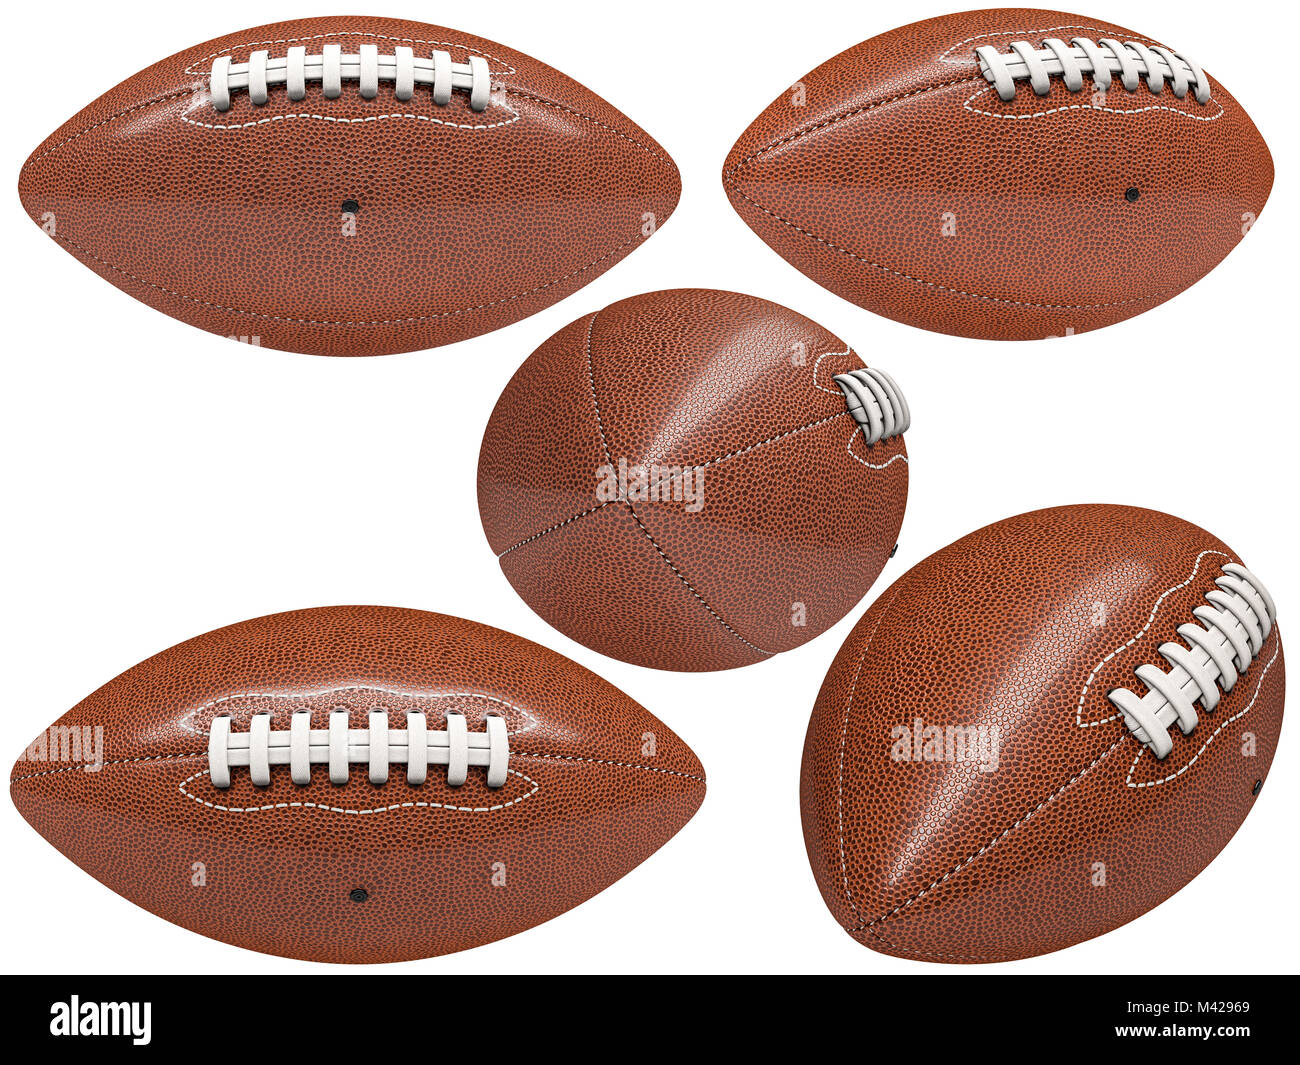 Sammlung von amerikanischen Fußball-Ball auf Weiß 3D Rendering image isoliert Stockfoto